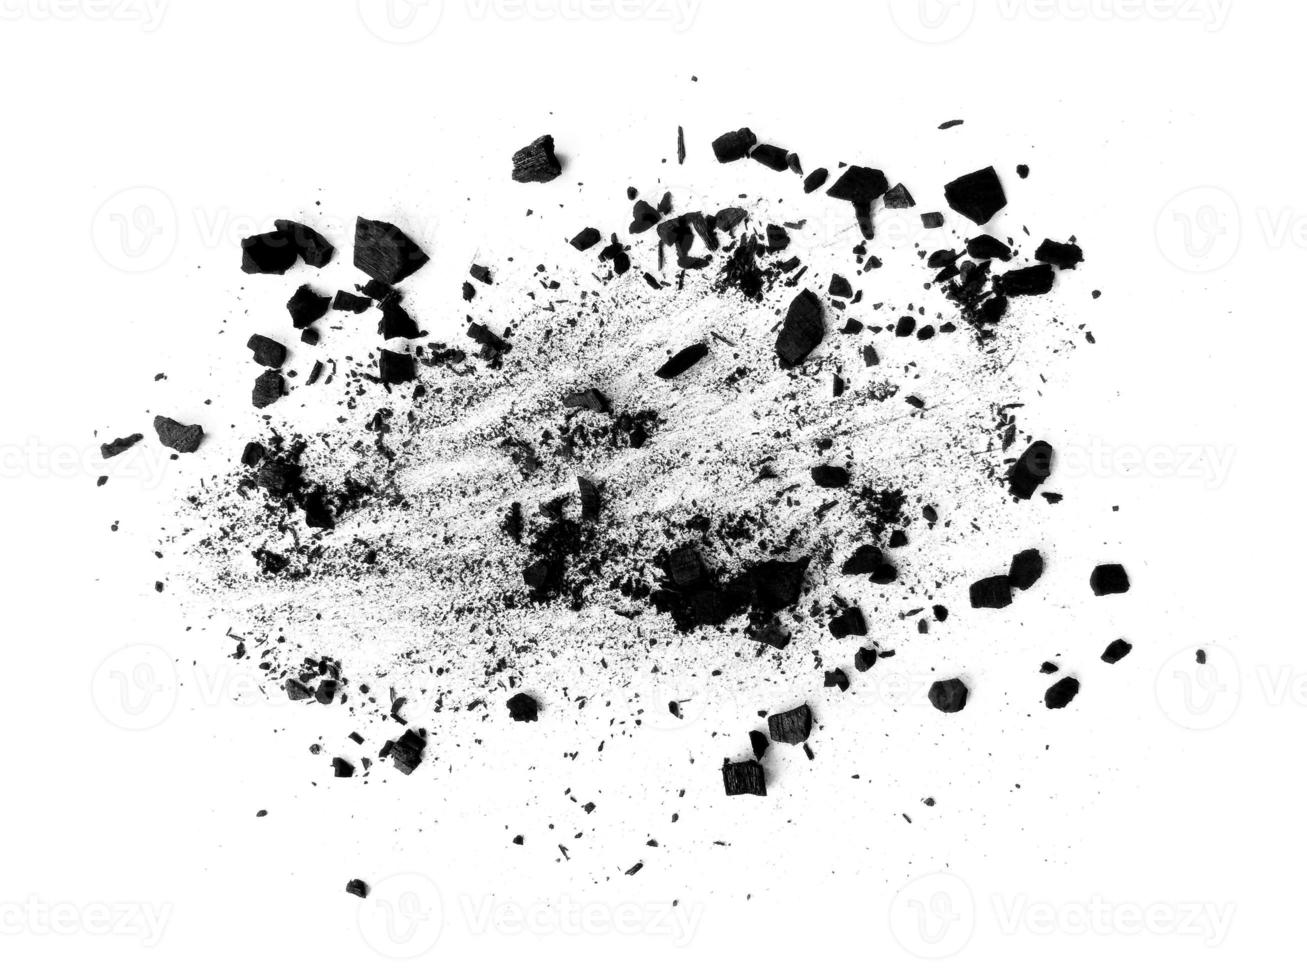 carbón de leña o polvo de carbón. textura de carbón negro. polvo de carbón de madera negro aislado sobre fondo blanco foto